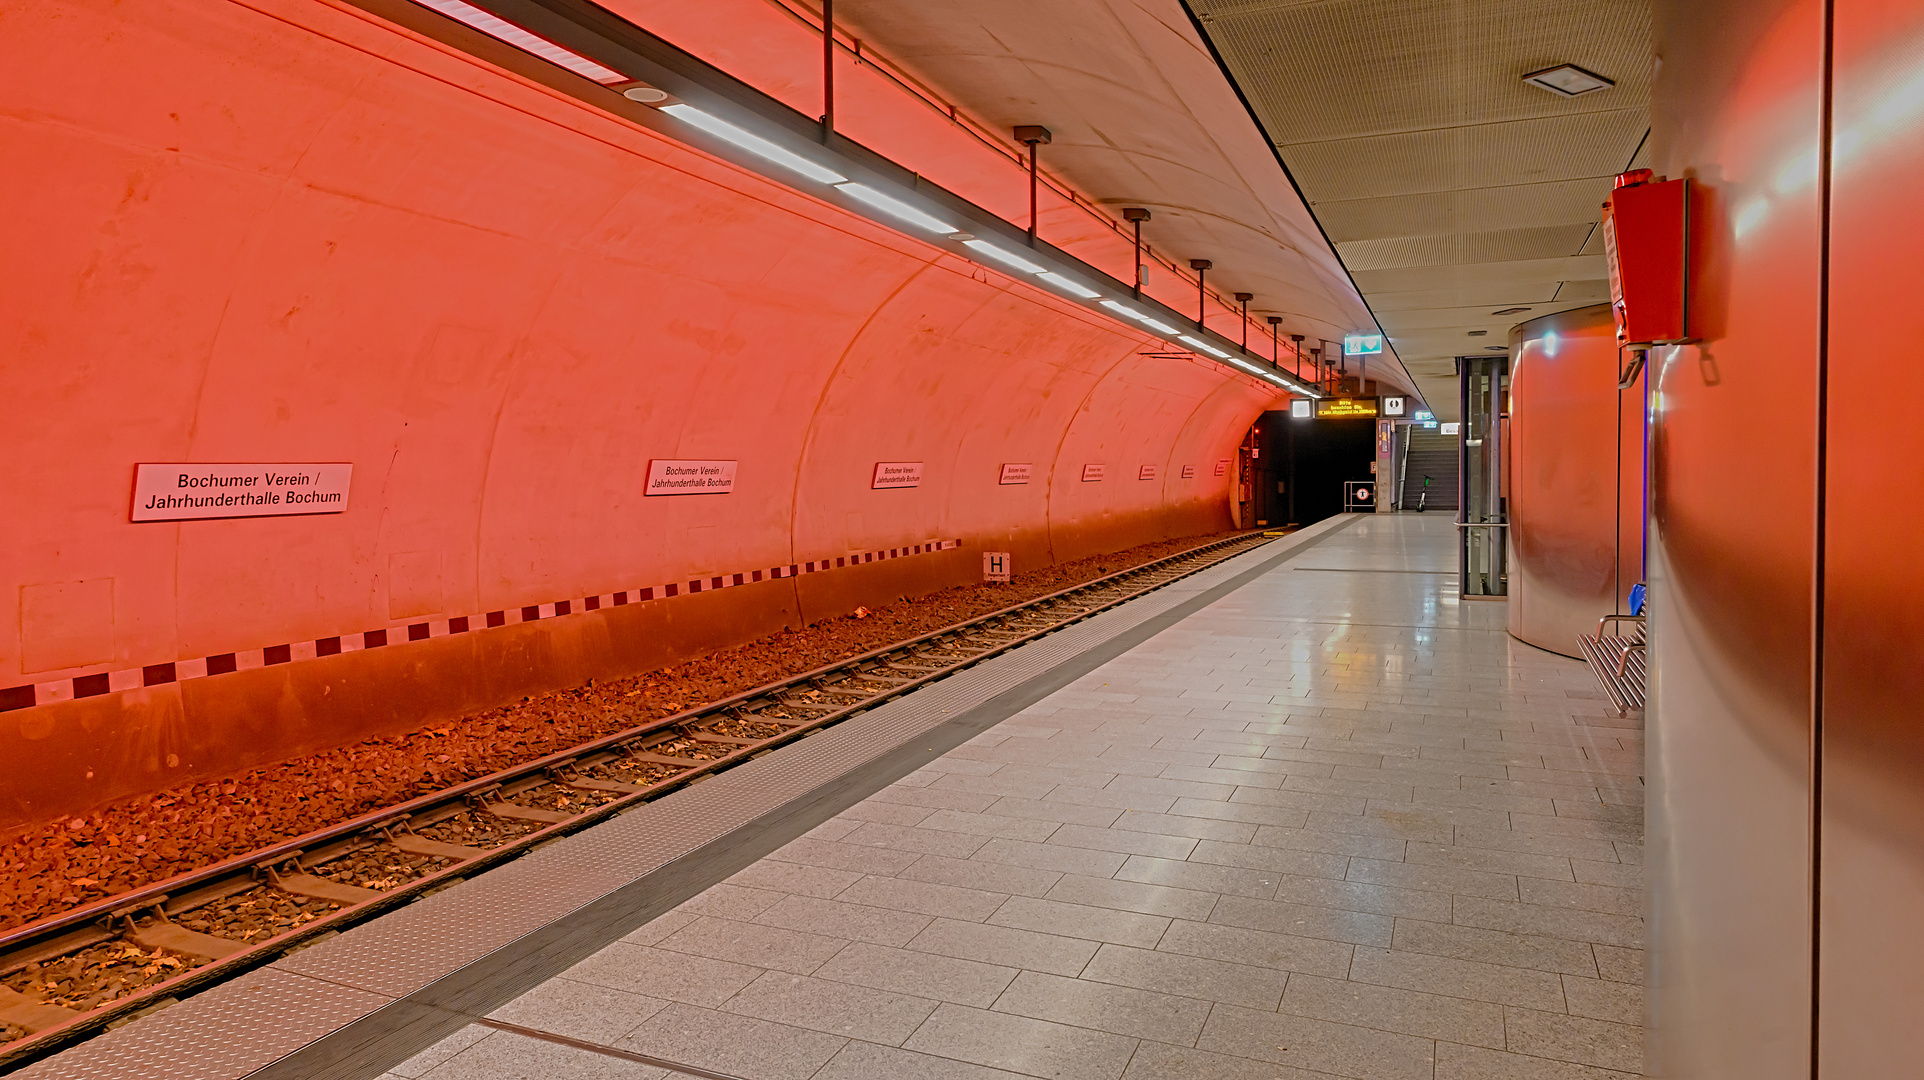 Bochum, Linie 302, Station 'Bochumer Verein'